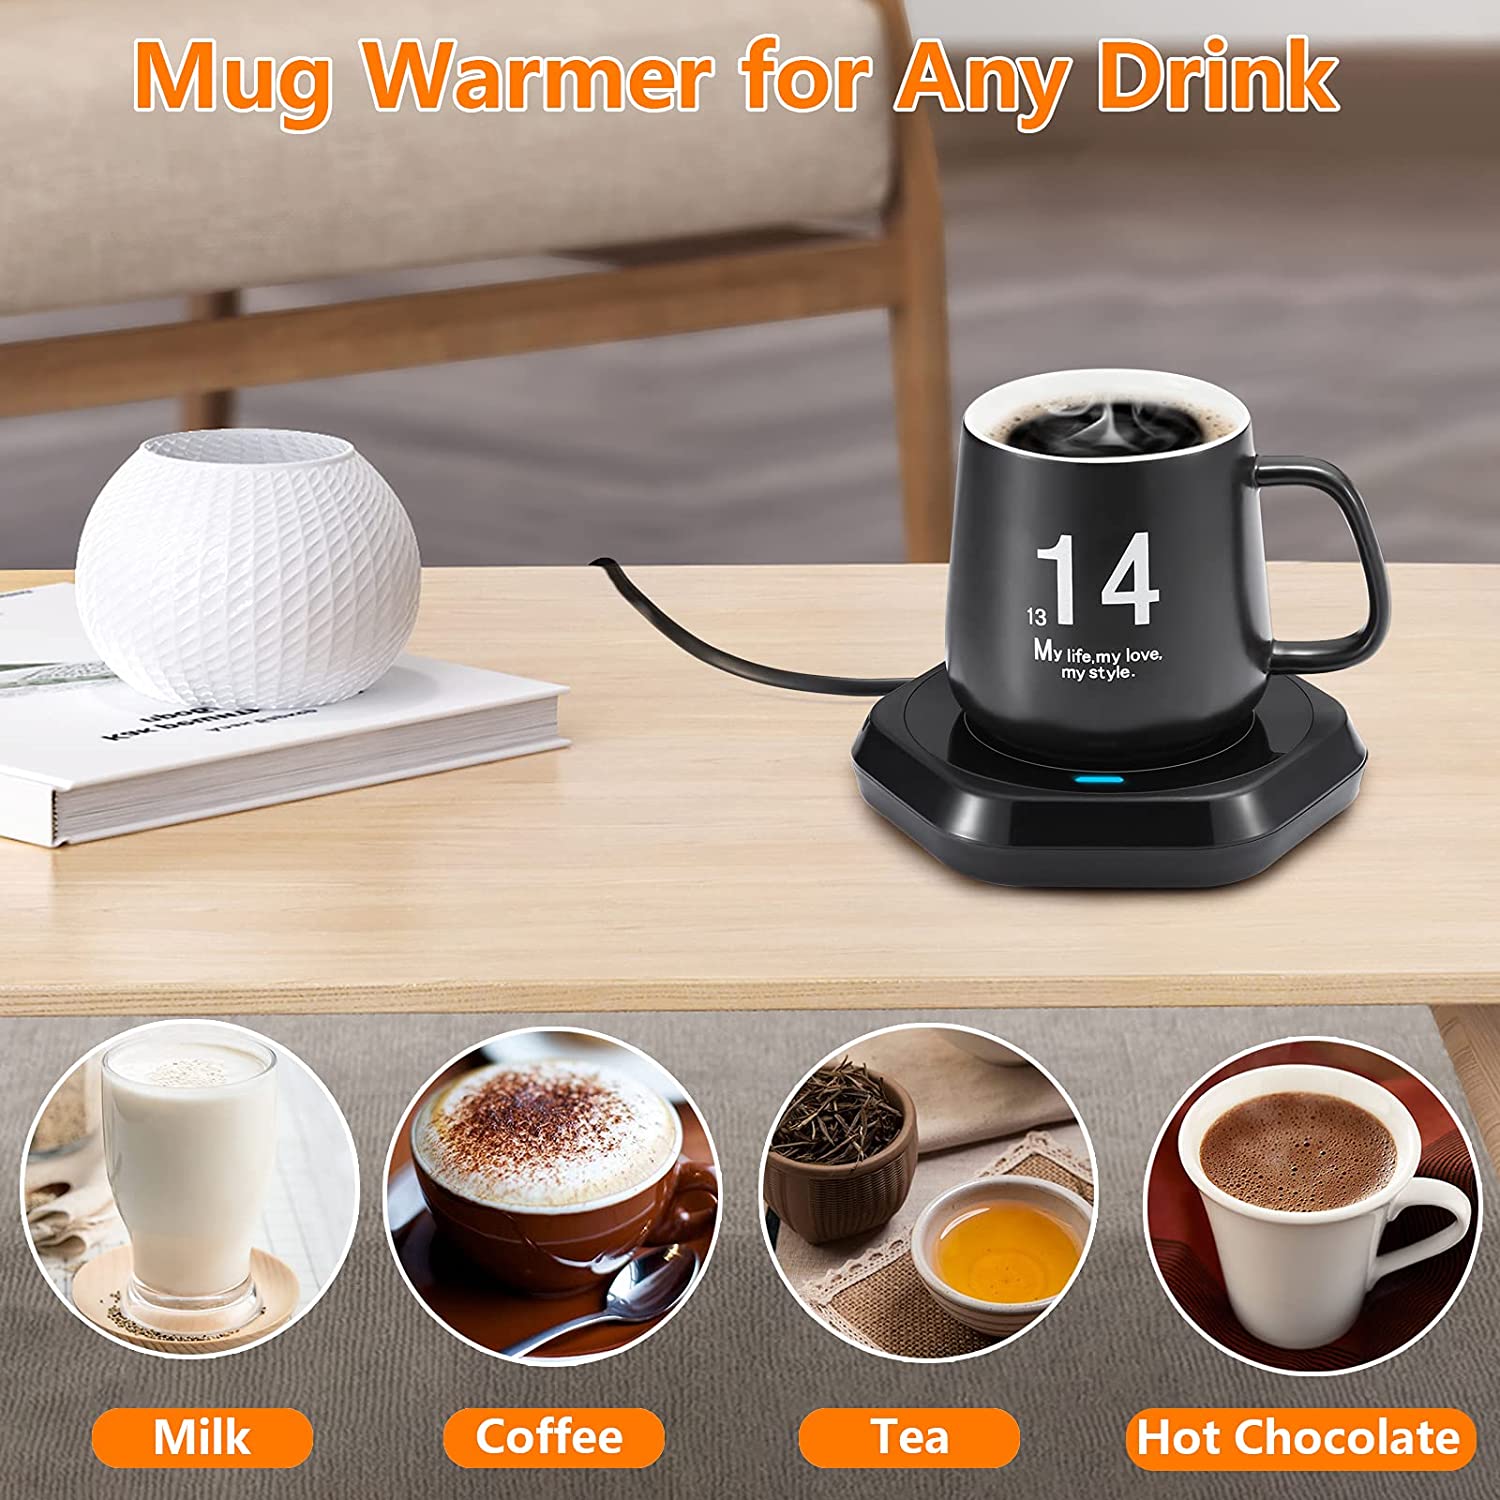 mug warmer from